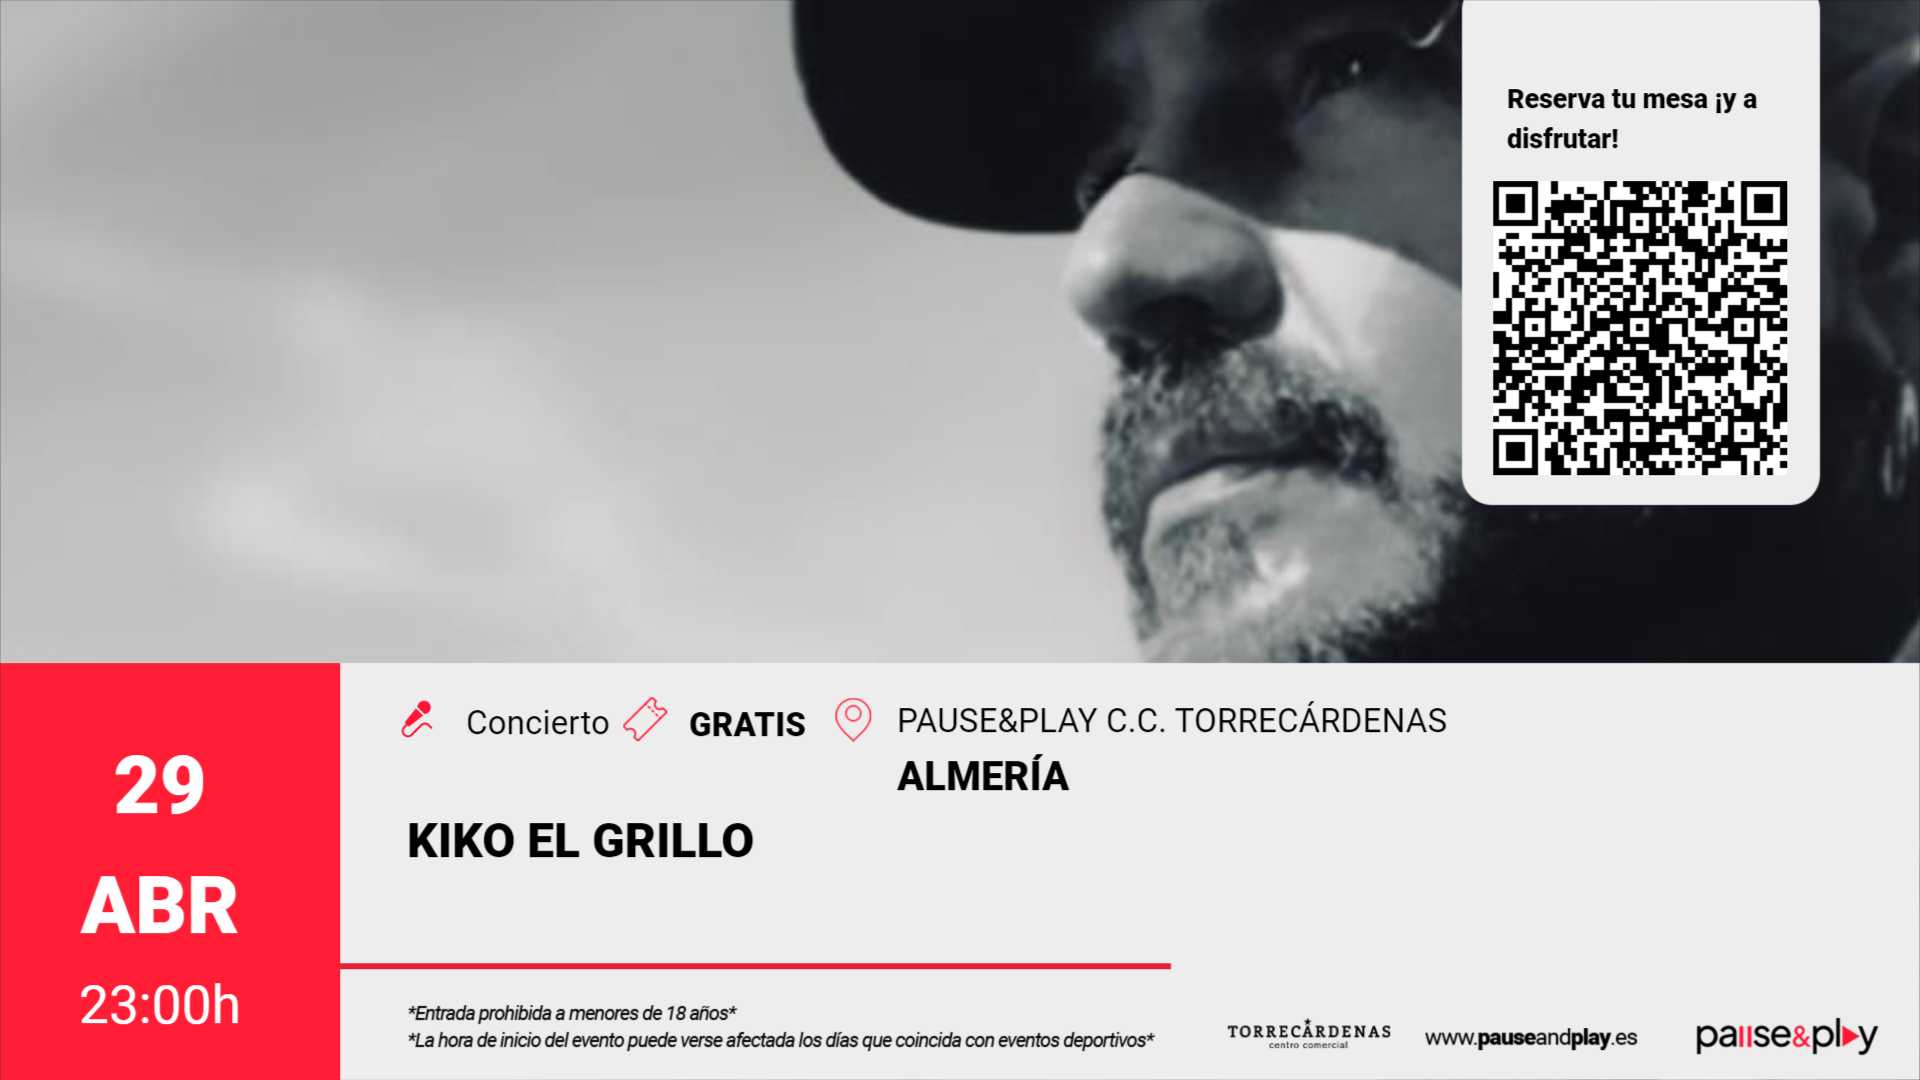 Concierto Kiko El Grillo - Pause&Play C.C. Torrecádenas